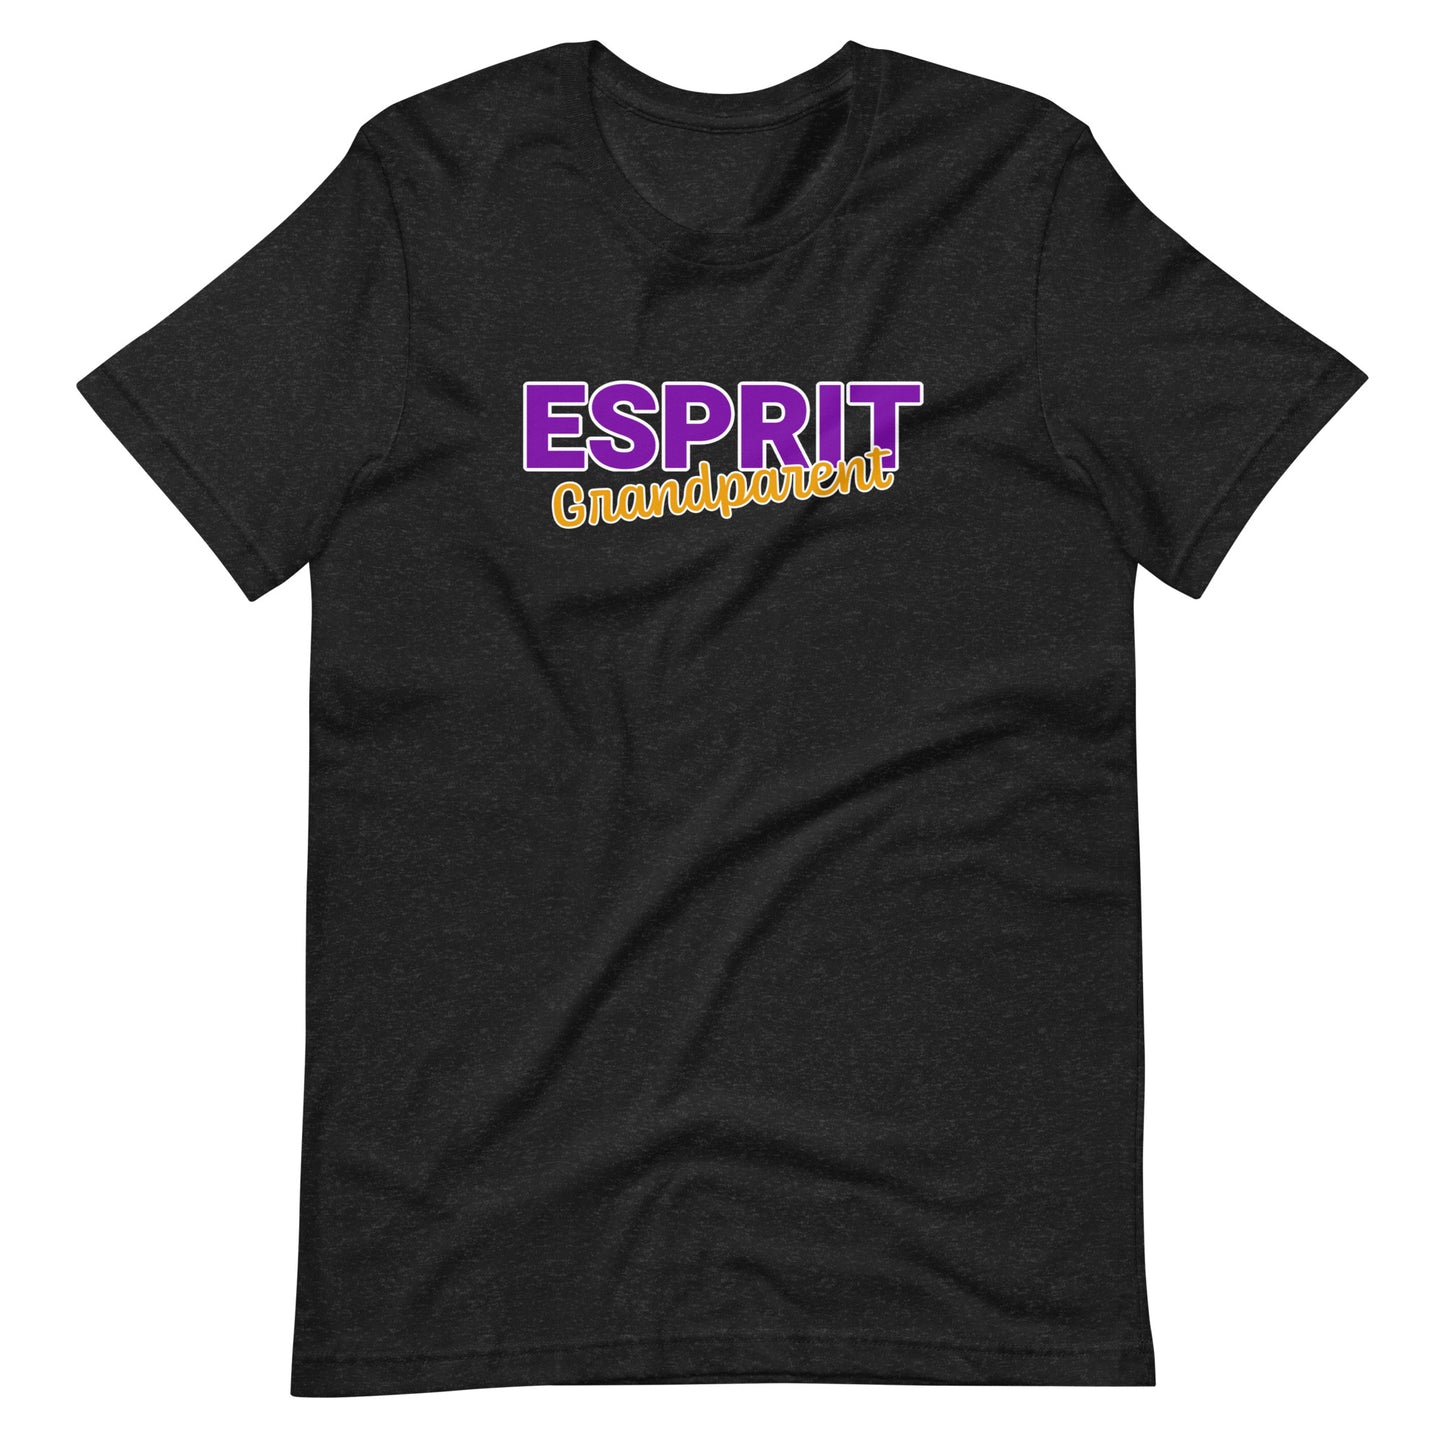 Esprit Performing Arts Adult T-shirt - Esprit Grandparent